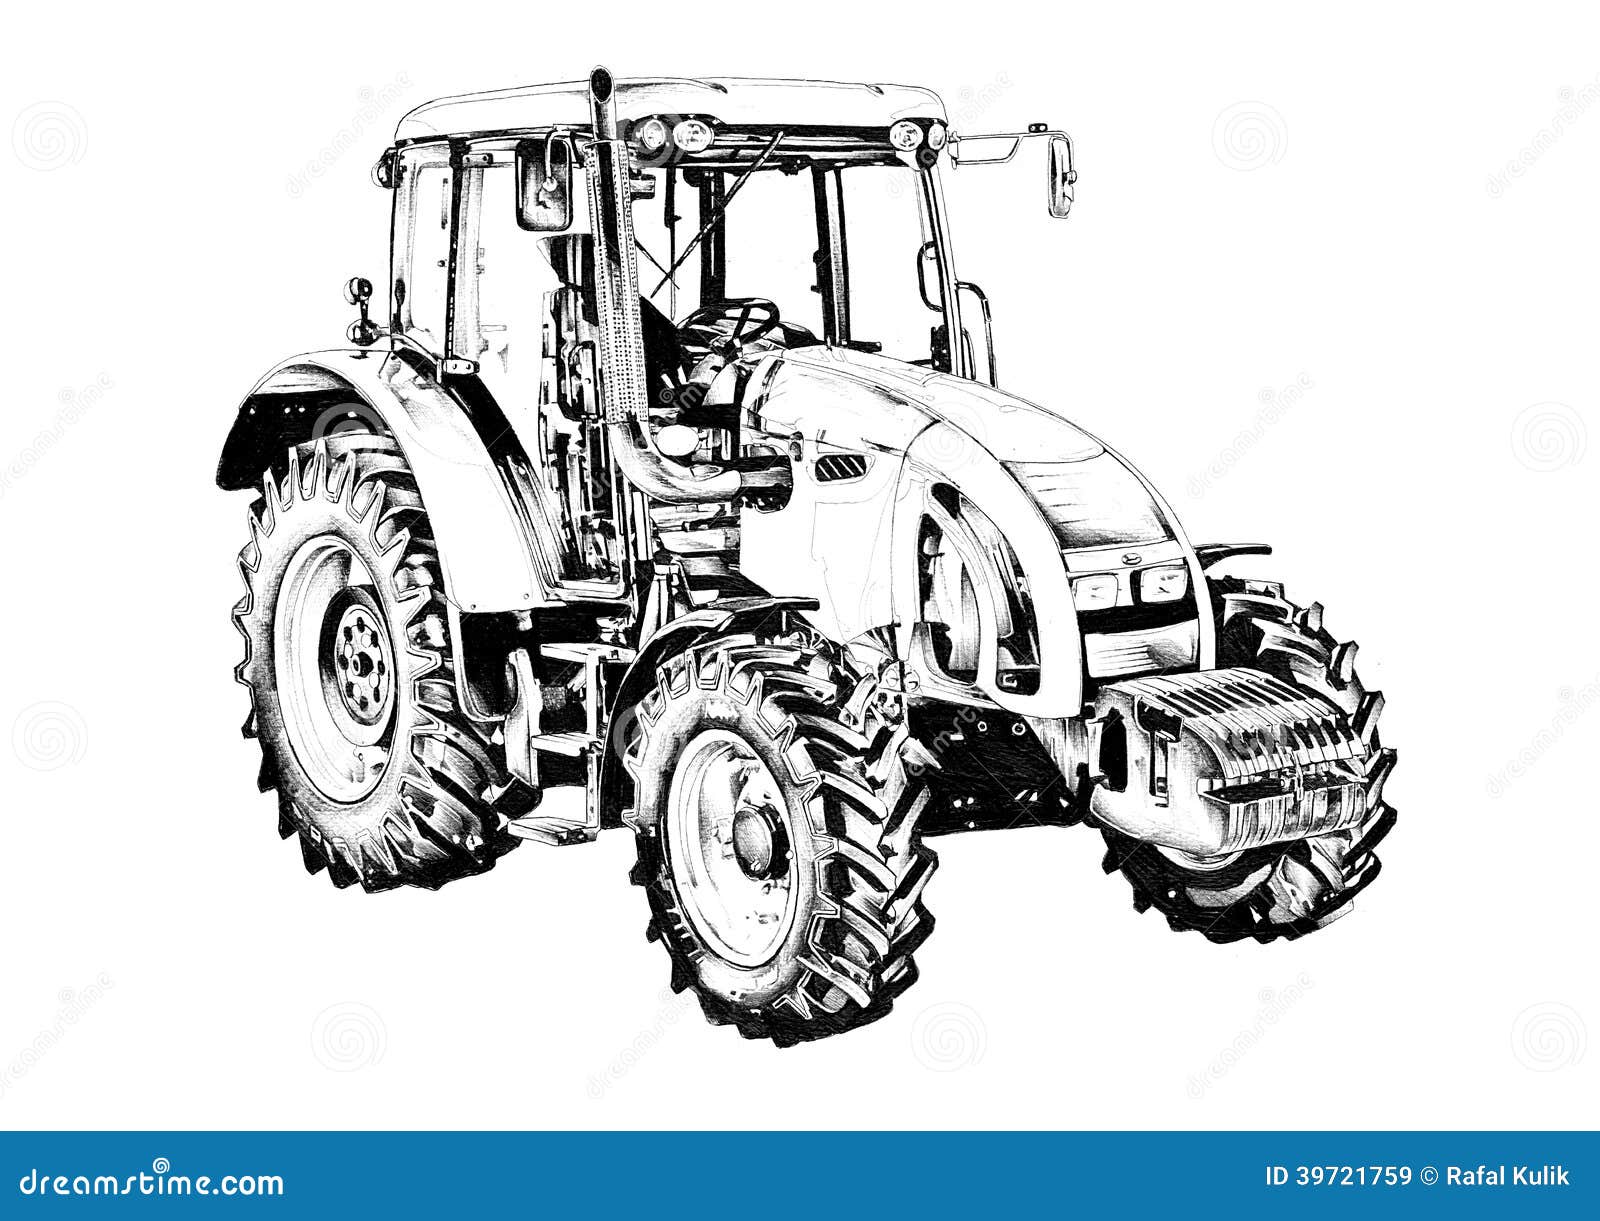 images libres de droits dessin d art d illustration de tracteur agricole image